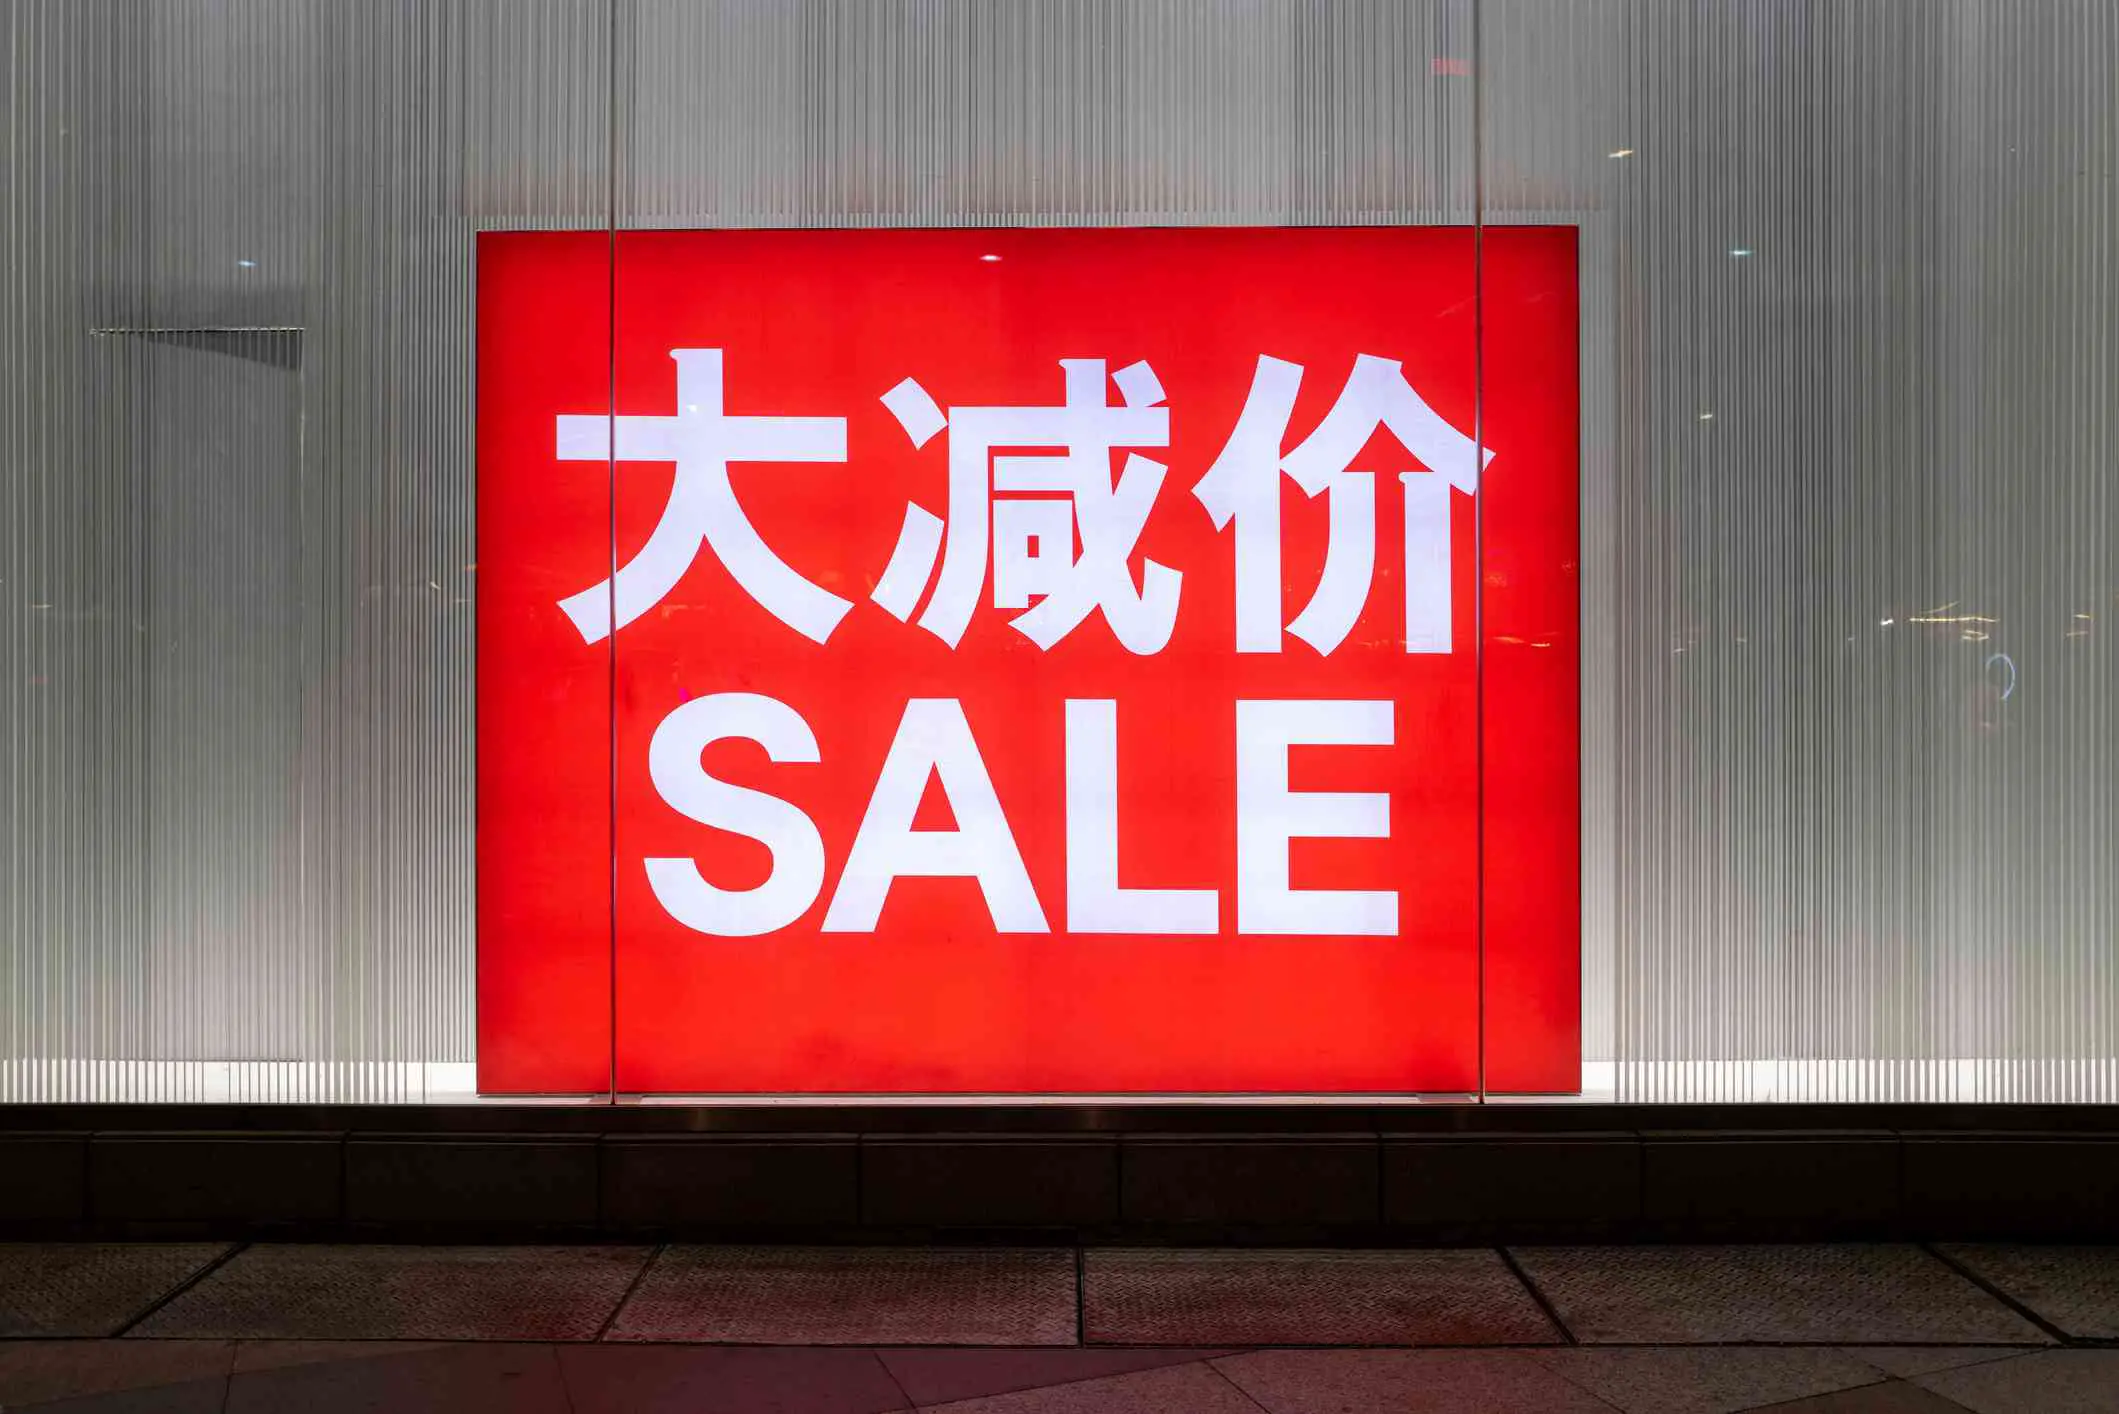 Sinal de vendas vermelho com texto em inglês e chinês